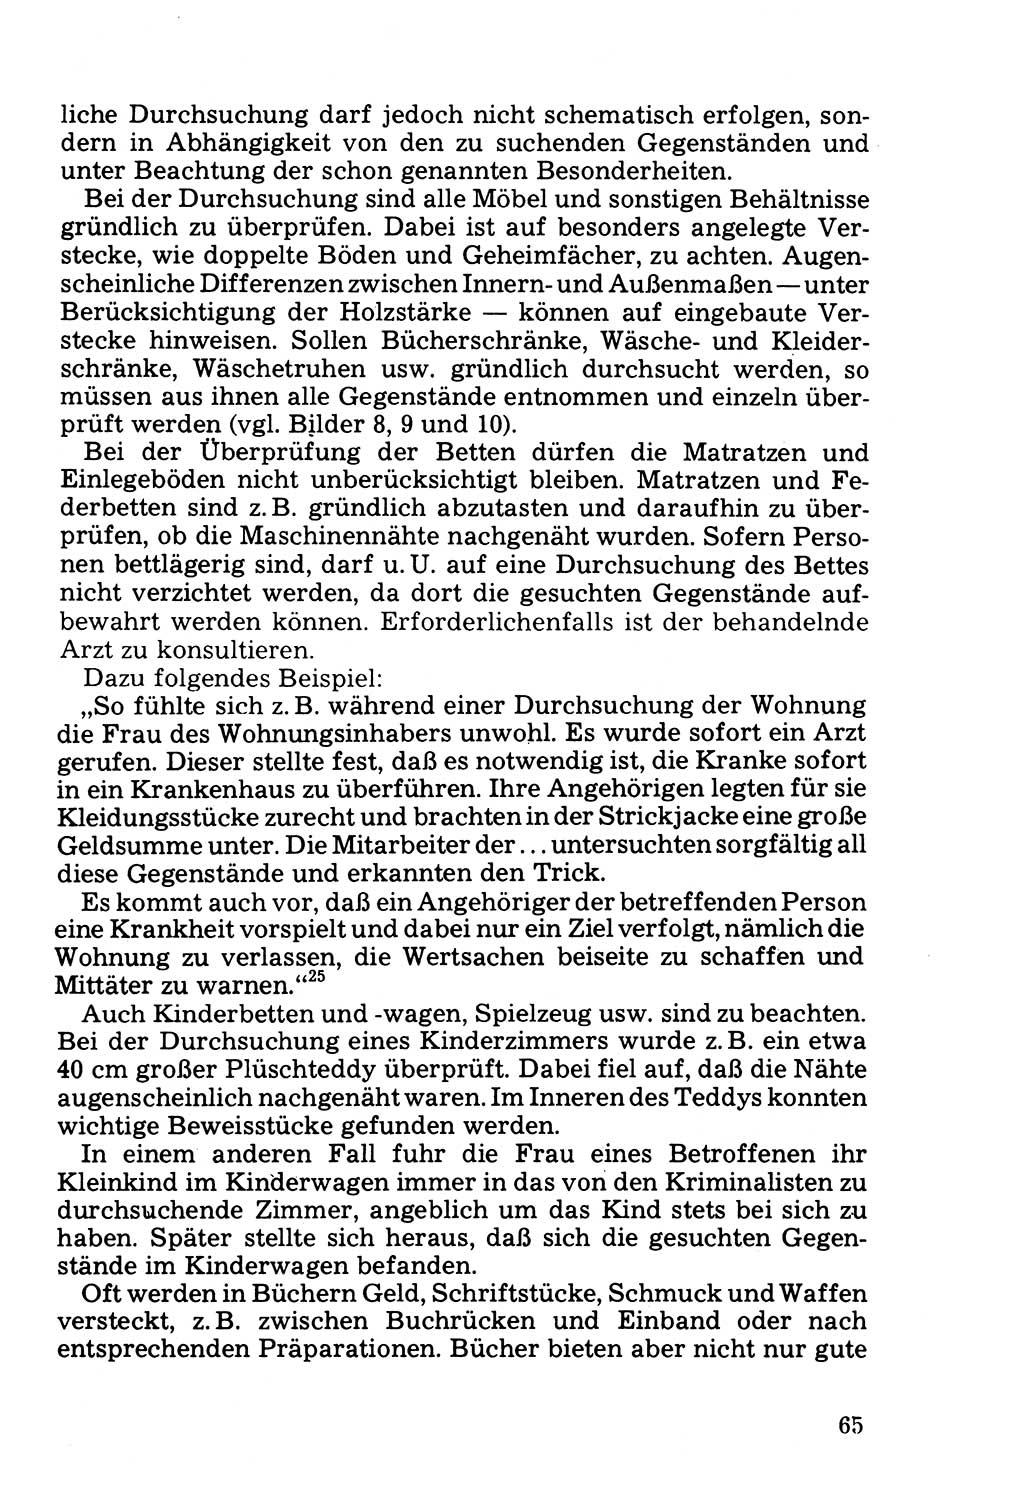 Die Durchsuchung und die Beschlagnahme [Deutsche Demokratische Republik (DDR)] 1979, Seite 65 (Durchs. Beschl. DDR 1979, S. 65)